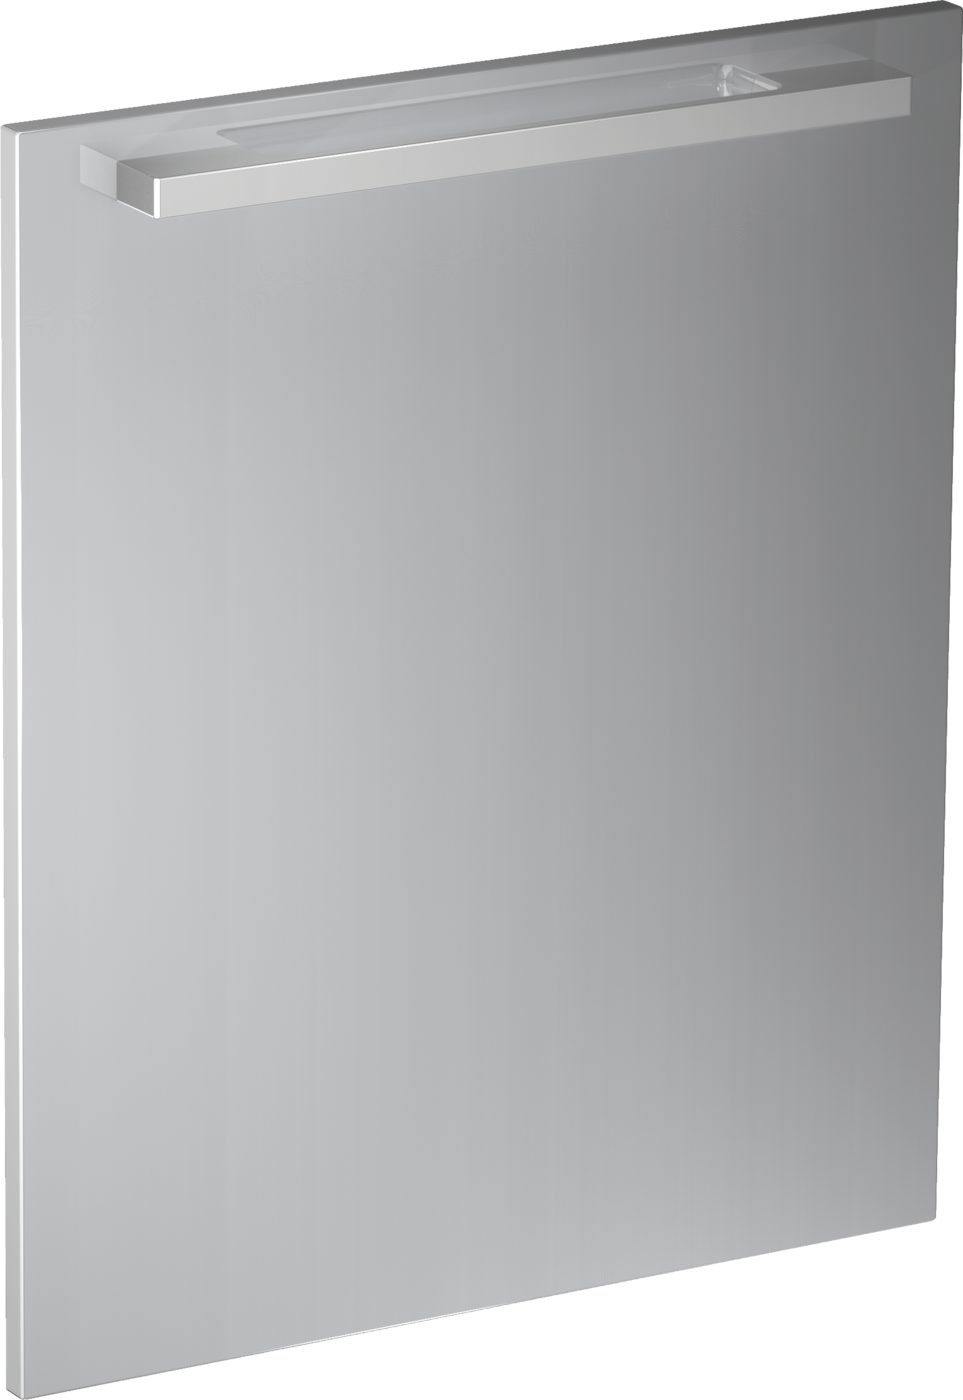 Vi-előlapburkolat: SZ x M, 60 x 77 cm ContourLine Design teljesen beépíthető mosogatógépekhez.